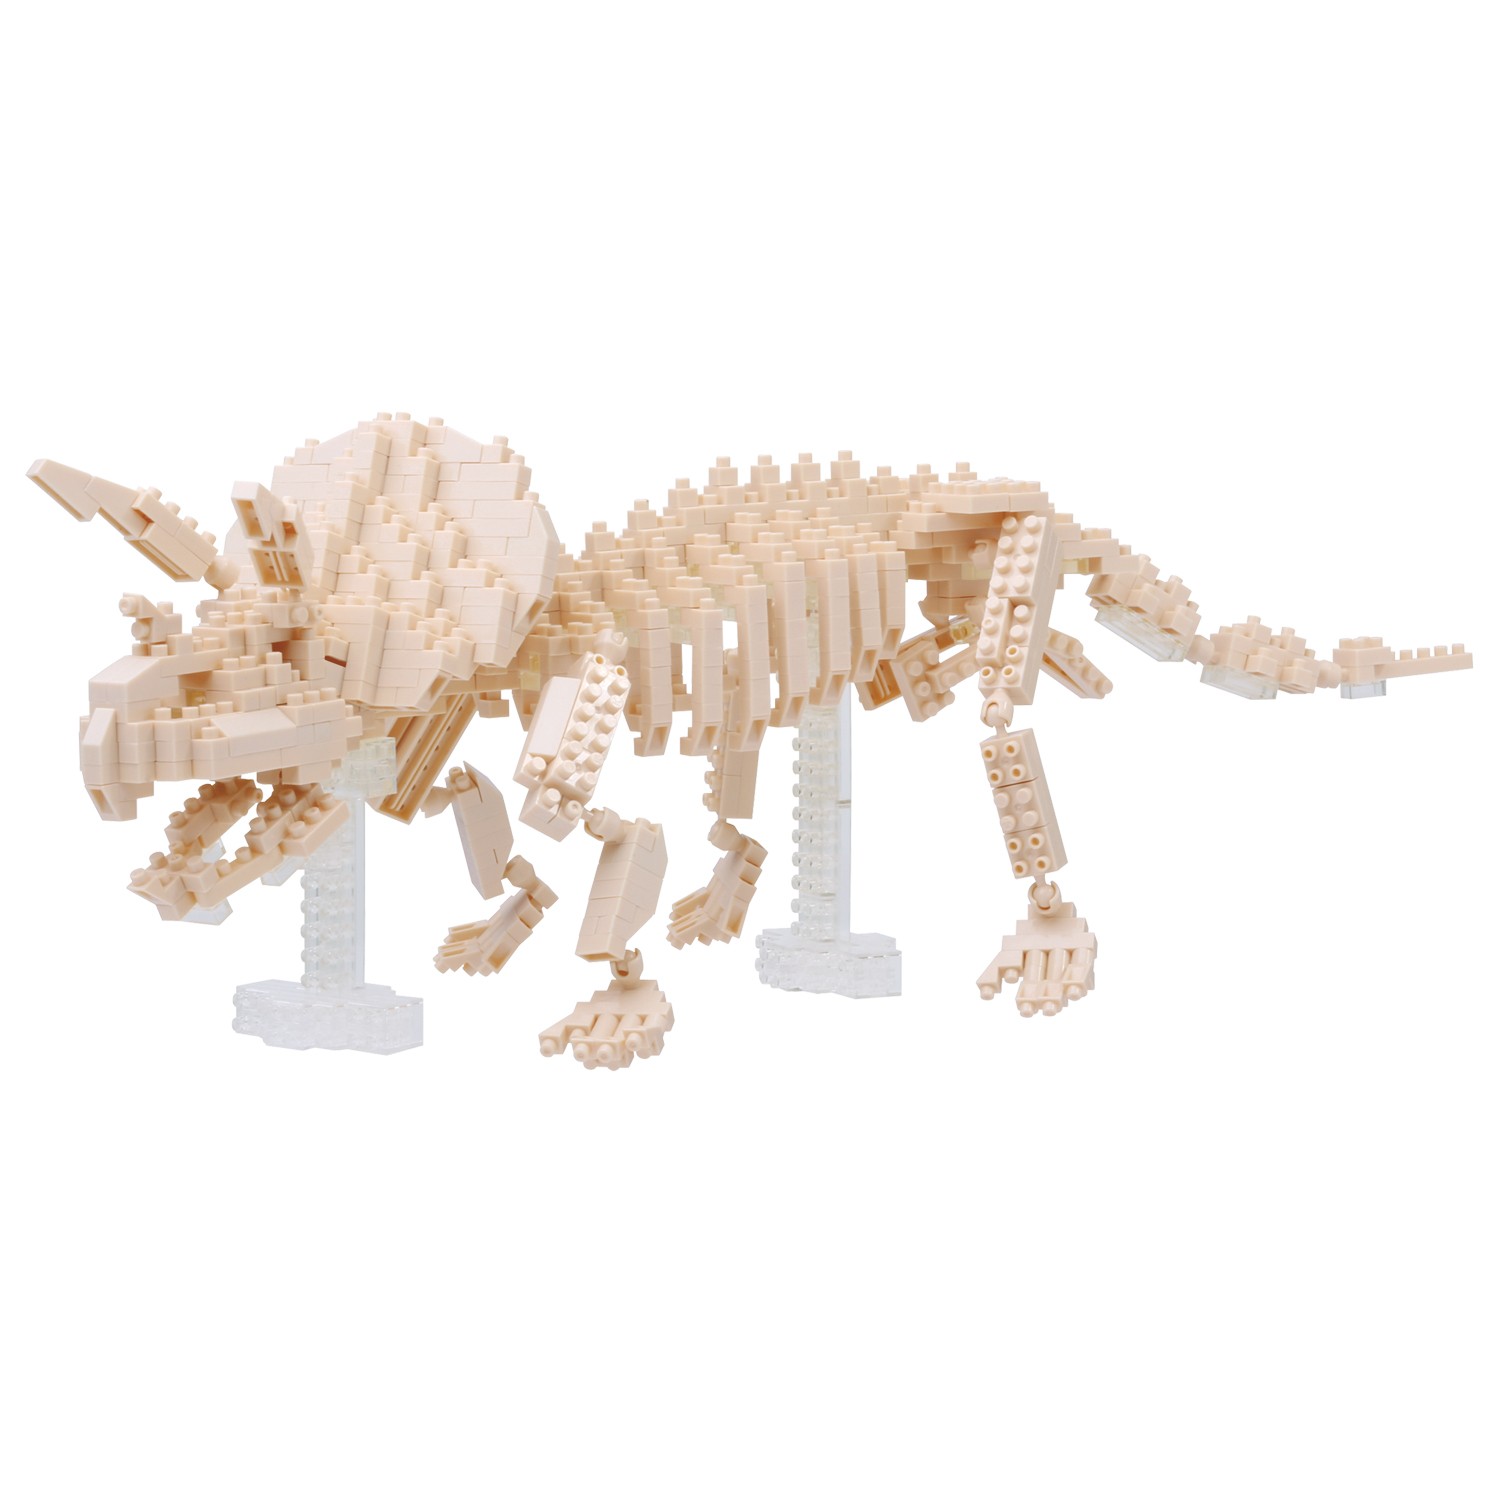 NBM 017 700 Piece Nanoblock Triceratops Skeleton Building Blocks Kit